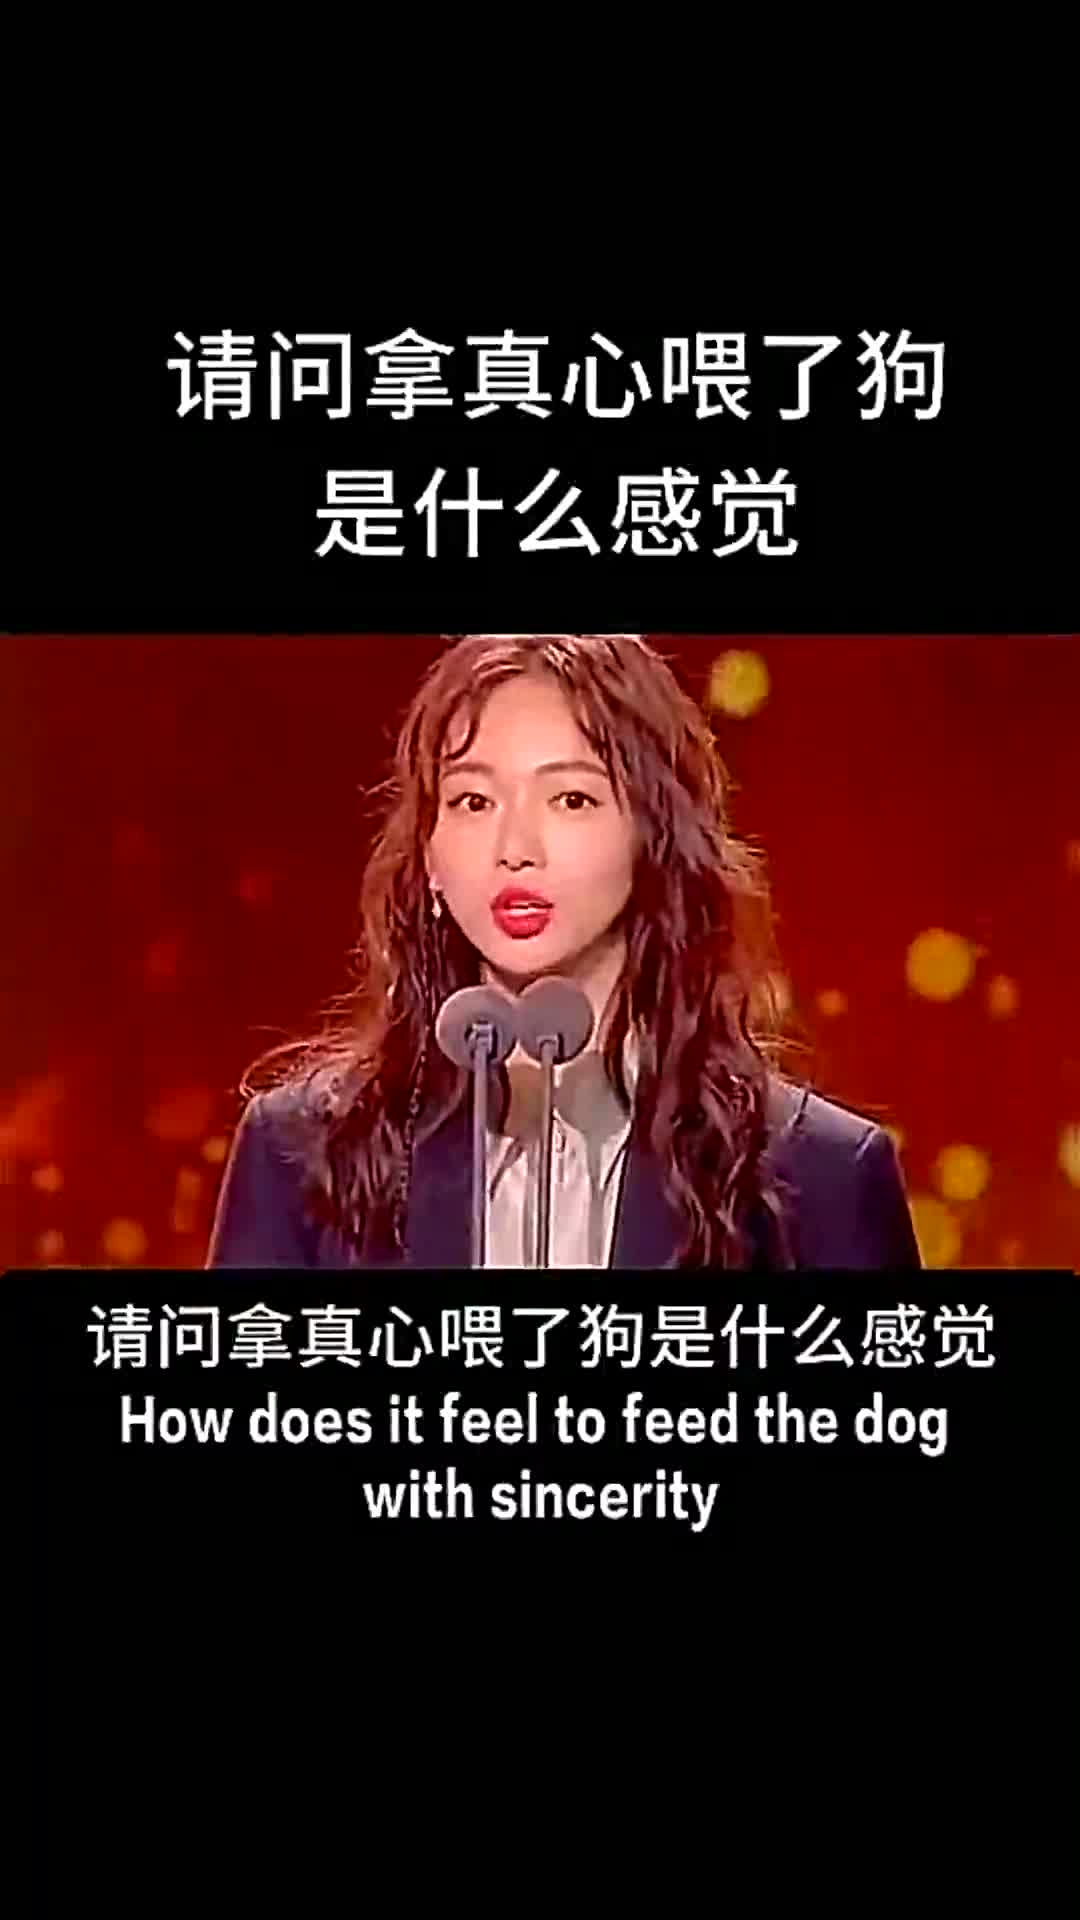 请问拿真心喂了狗是什么感觉?